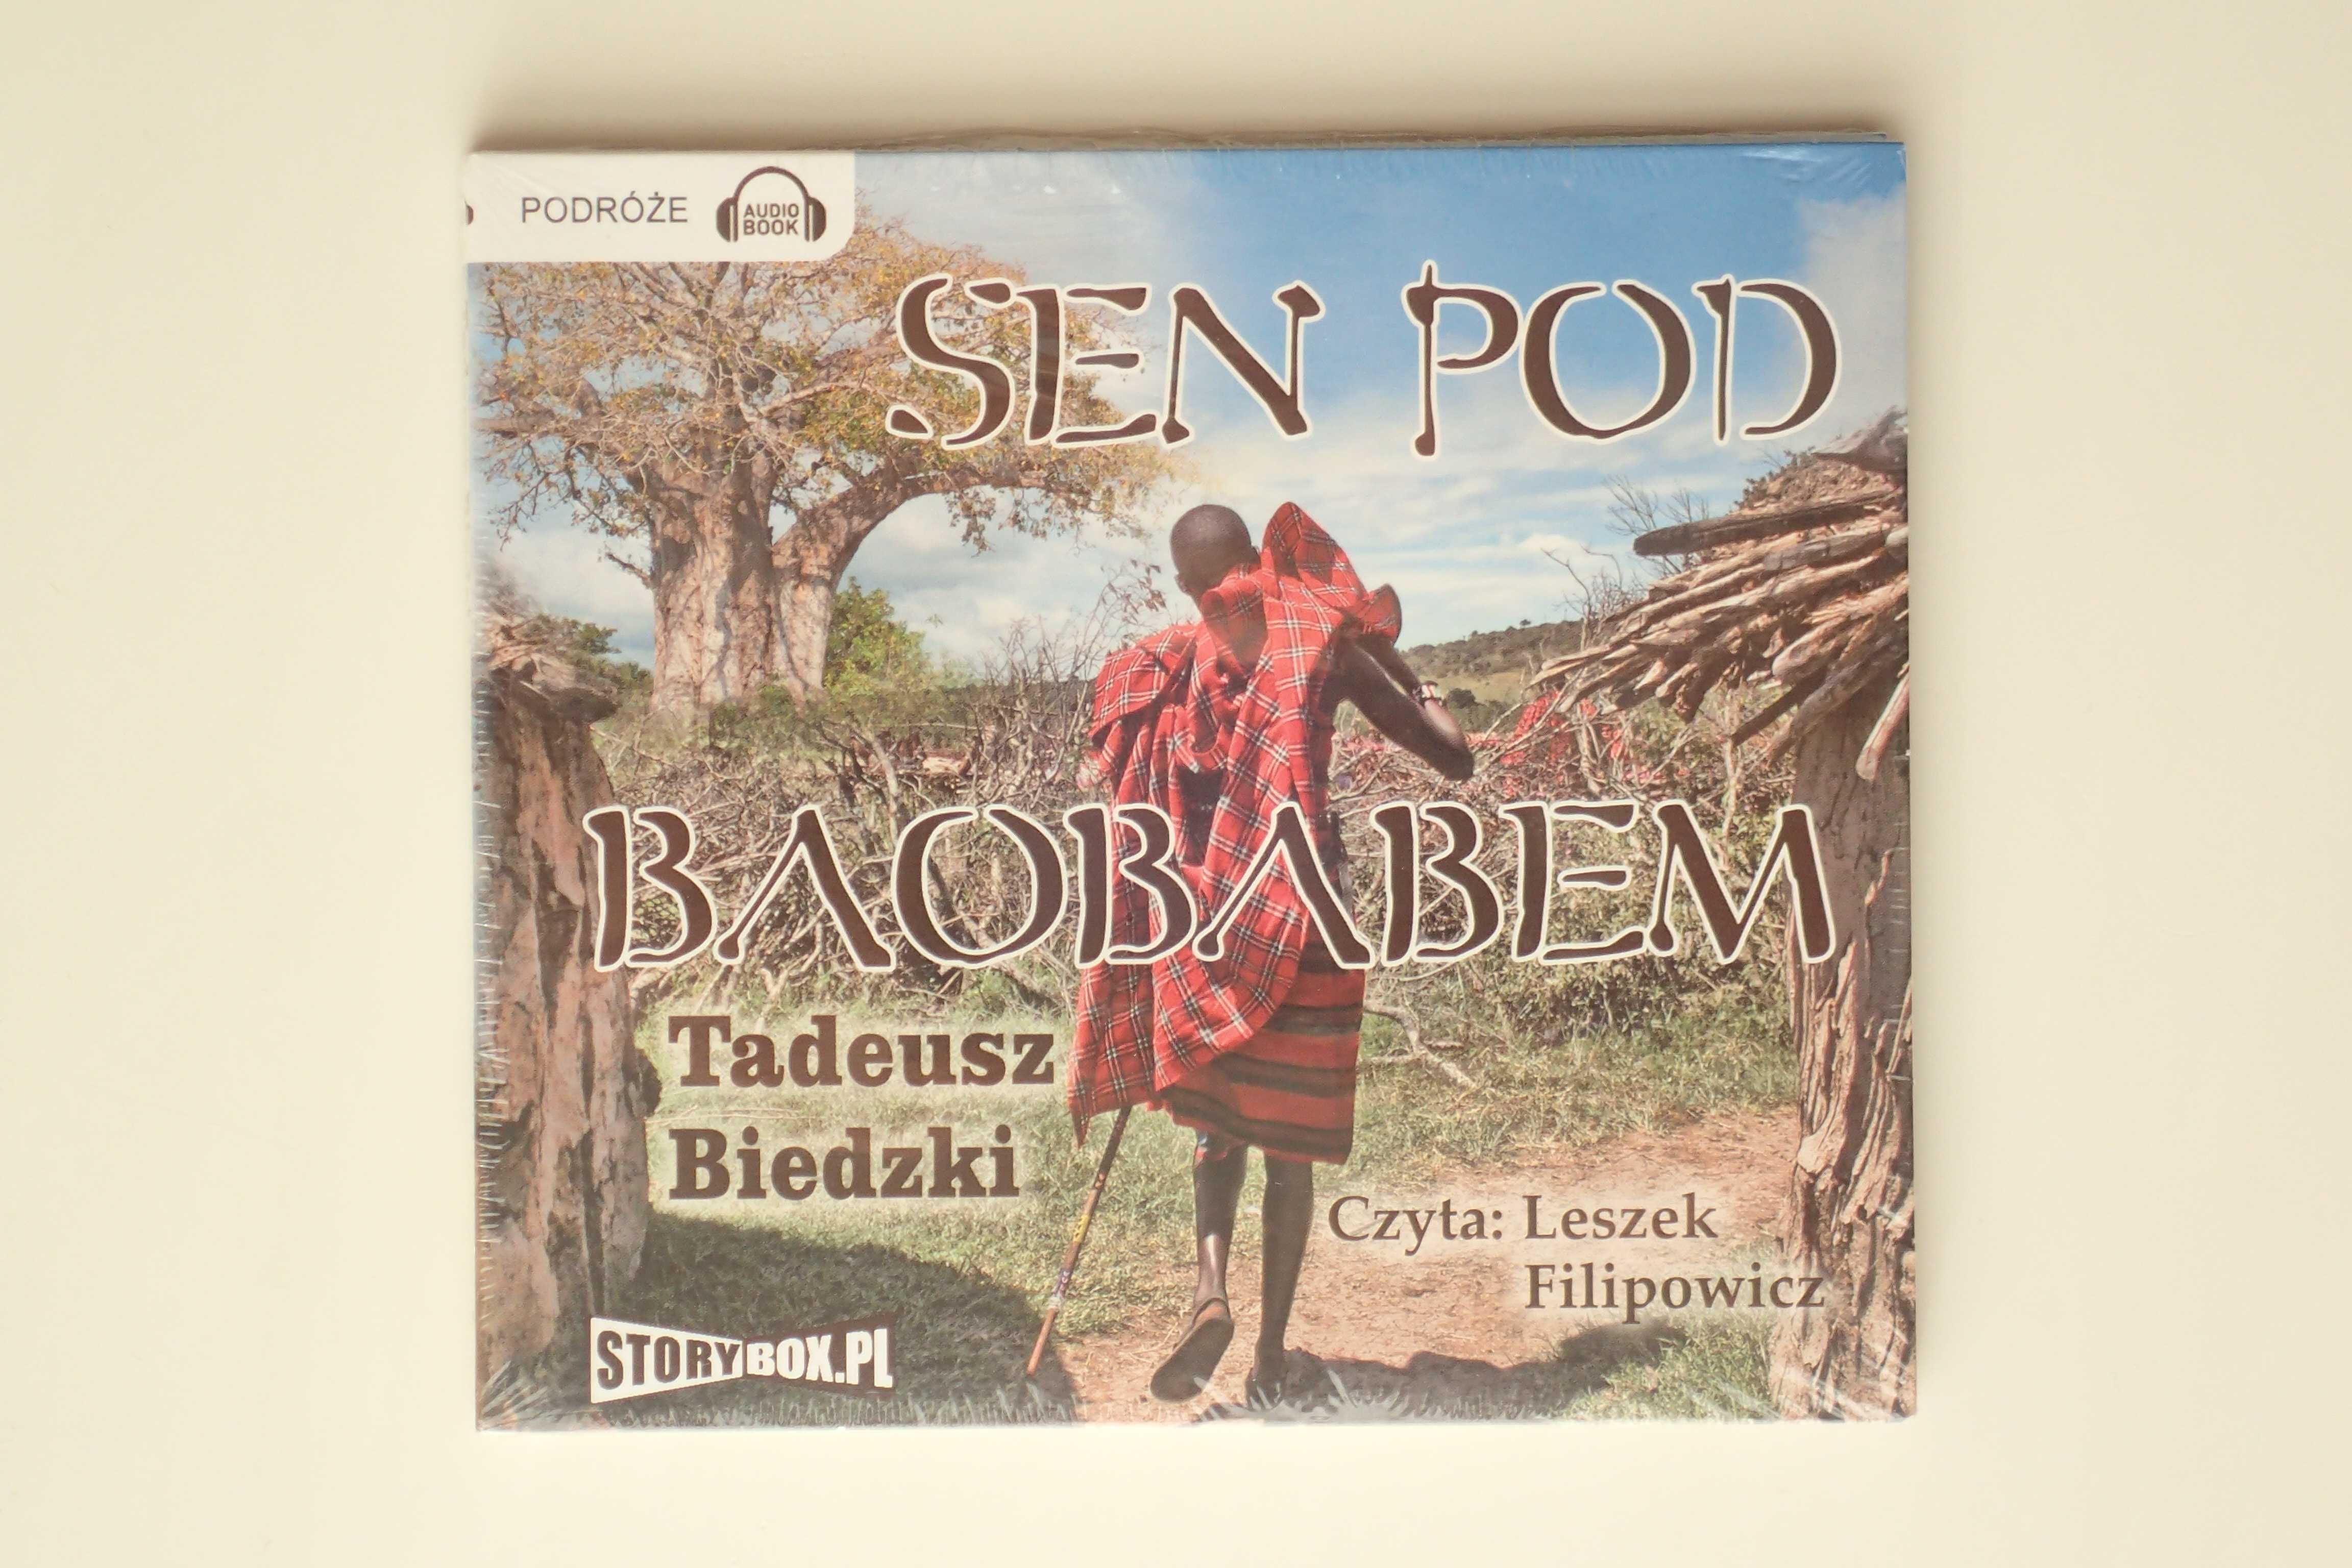 Sen pod baobabem, Afryka Zachodnia, T. Biedzki audiobook, nowy